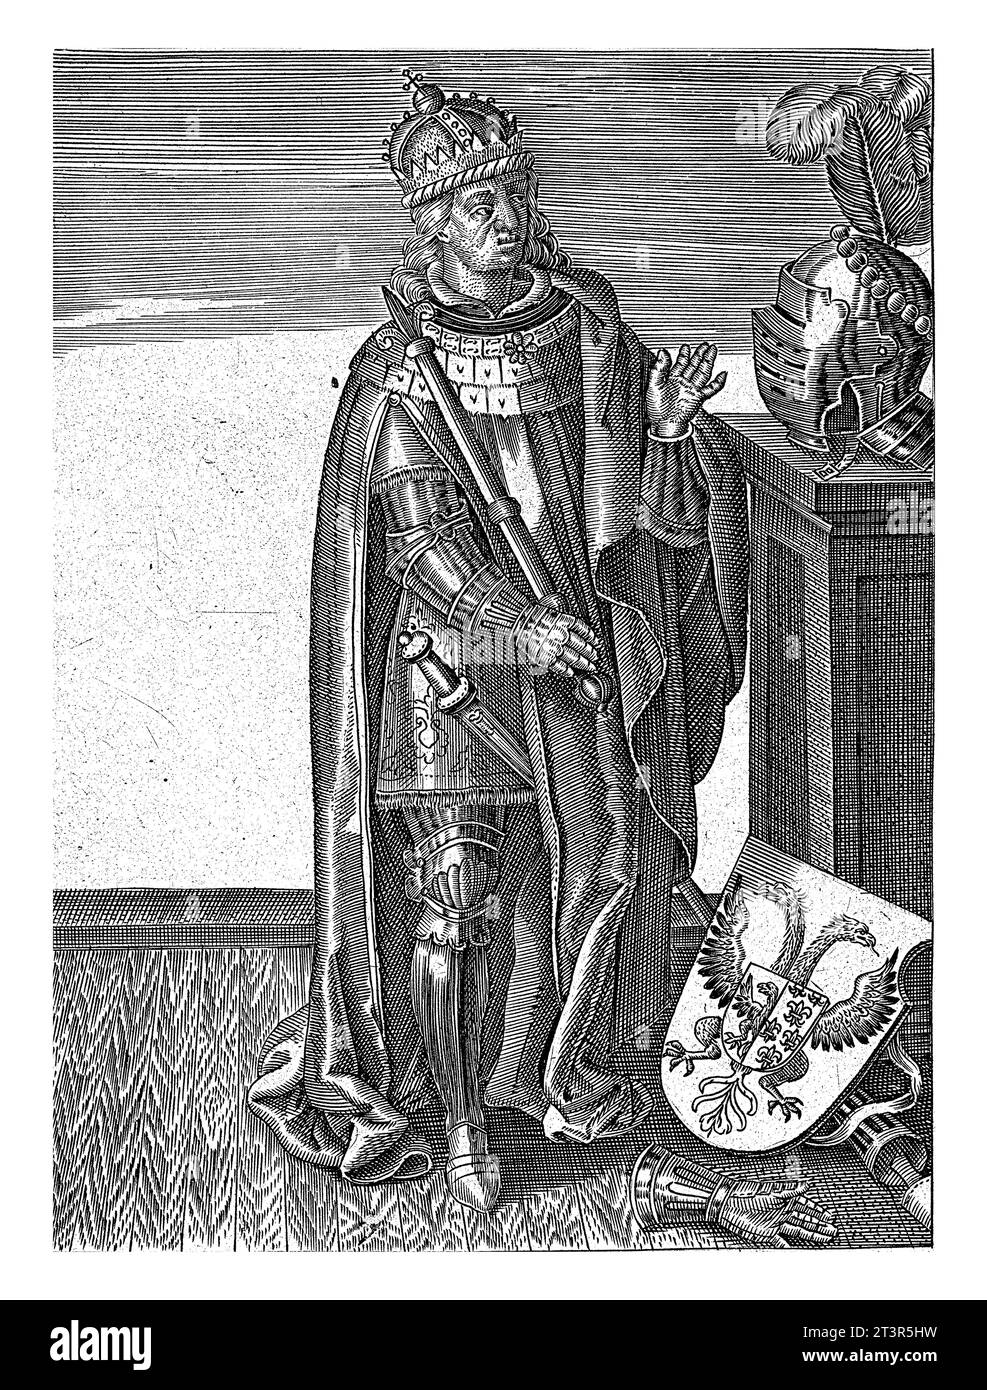 Porträt von Ludwig dem Frommen, anonym, 1600 Porträt von König Ludwig dem Frommen von Frankreich, Sohn Karls des Großen. Er steht zu seinen Füßen, in voller Rüstung. Stockfoto